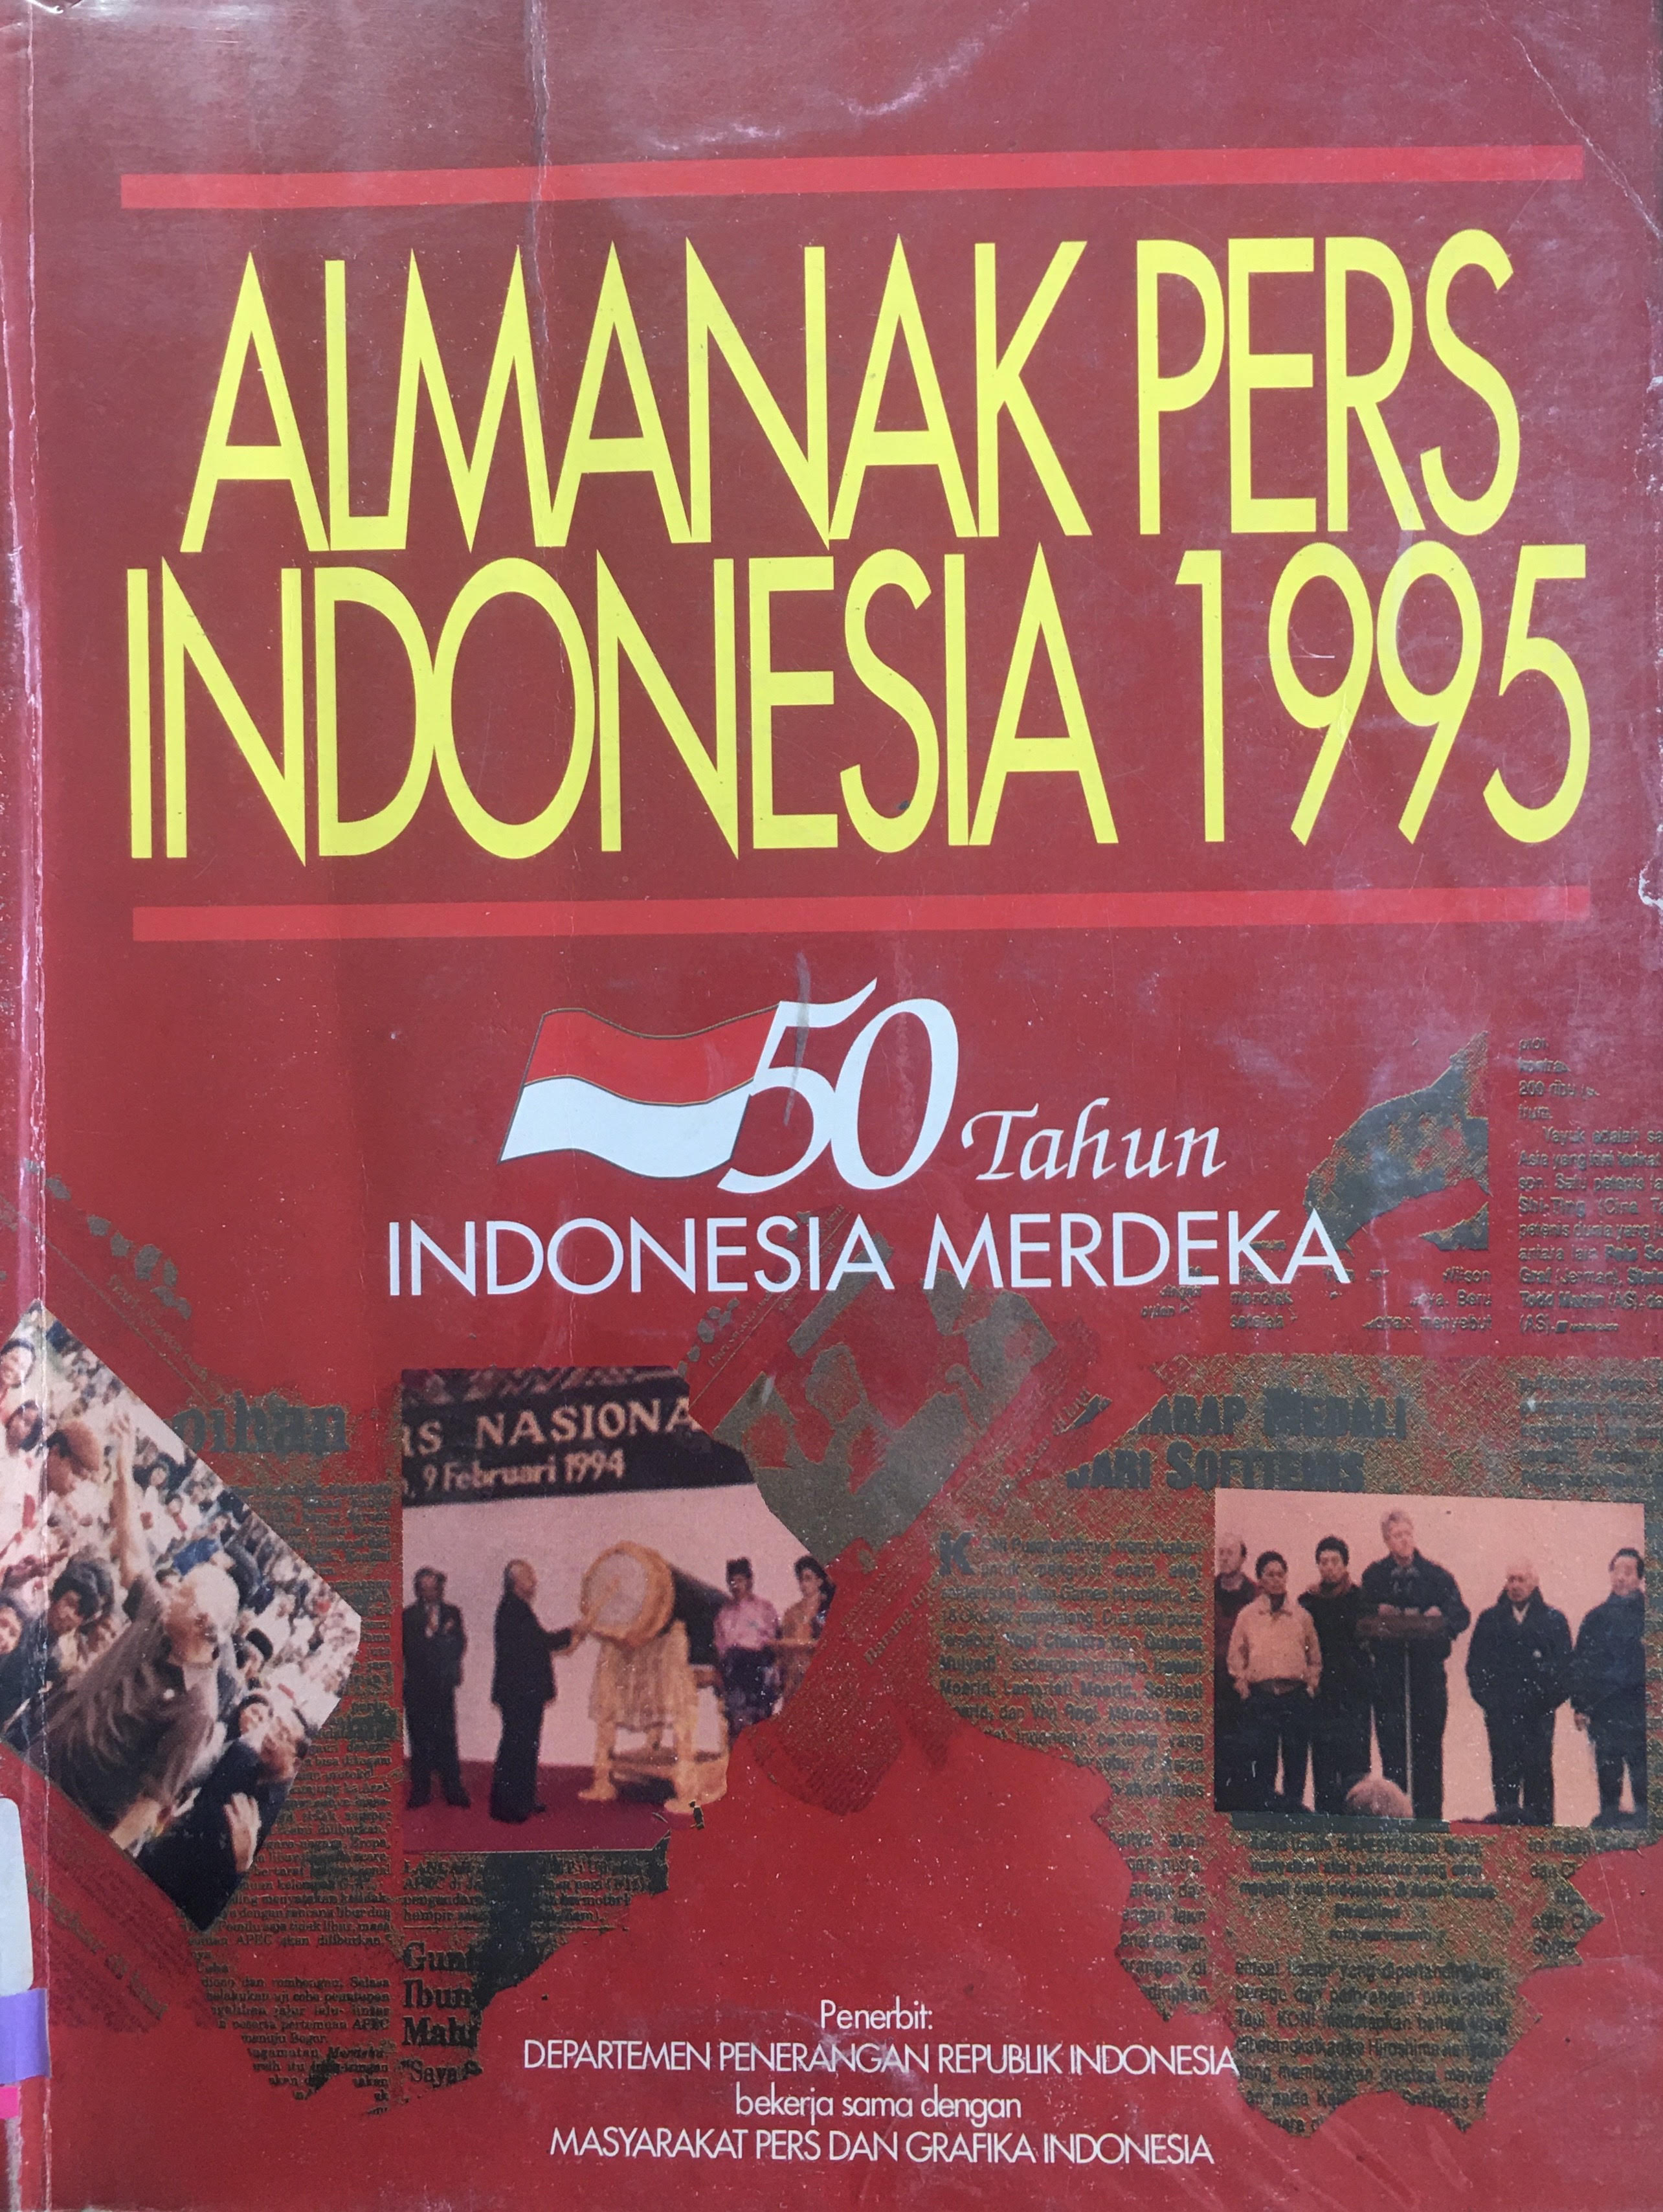 Almanak Pers Indonesia 1995